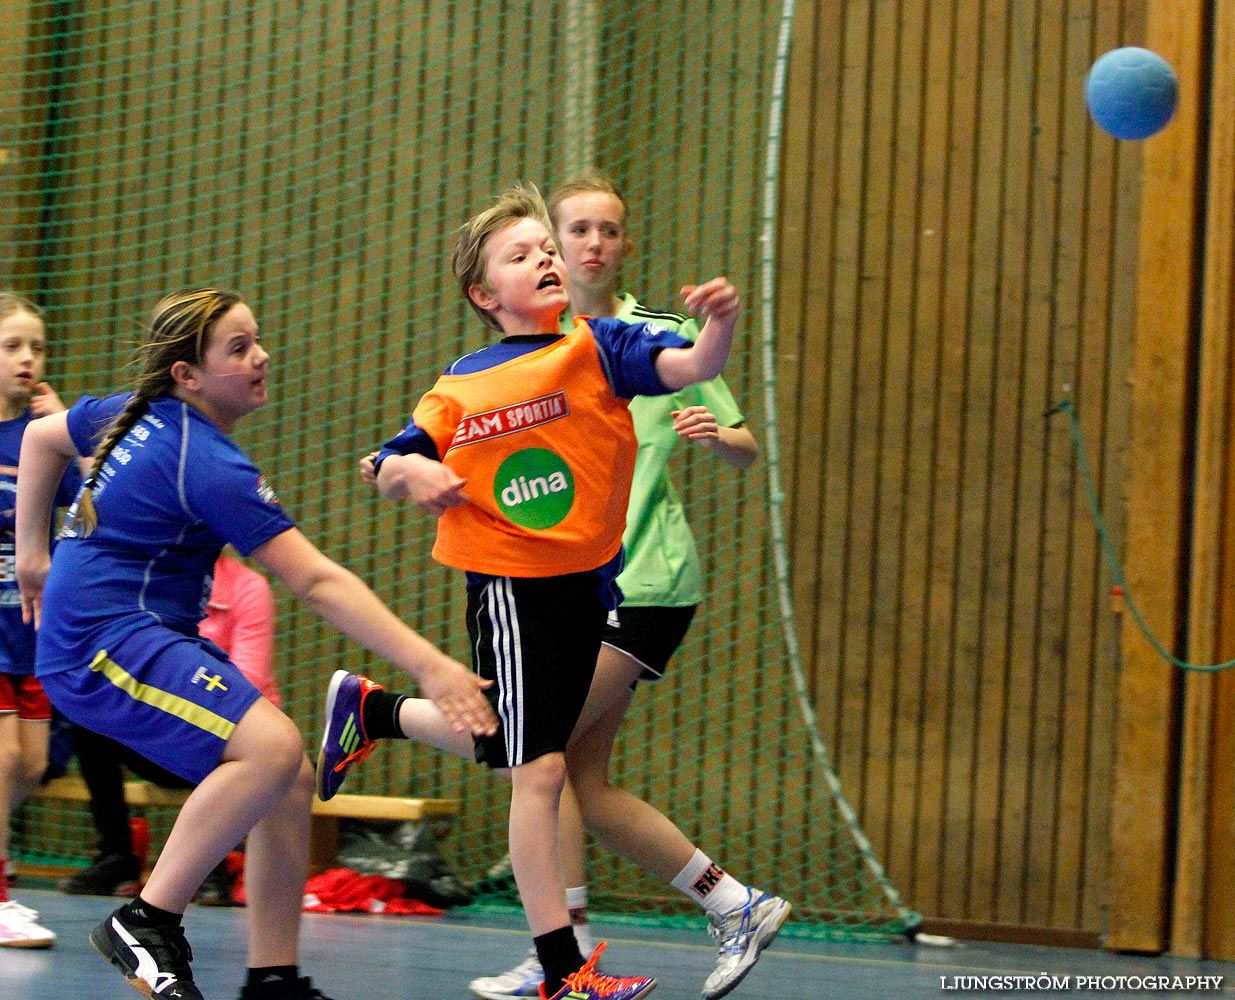 Klasshandboll Skövde 2012 Åldersklass 2002,mix,Arena Skövde,Skövde,Sverige,Handboll,,2012,47149